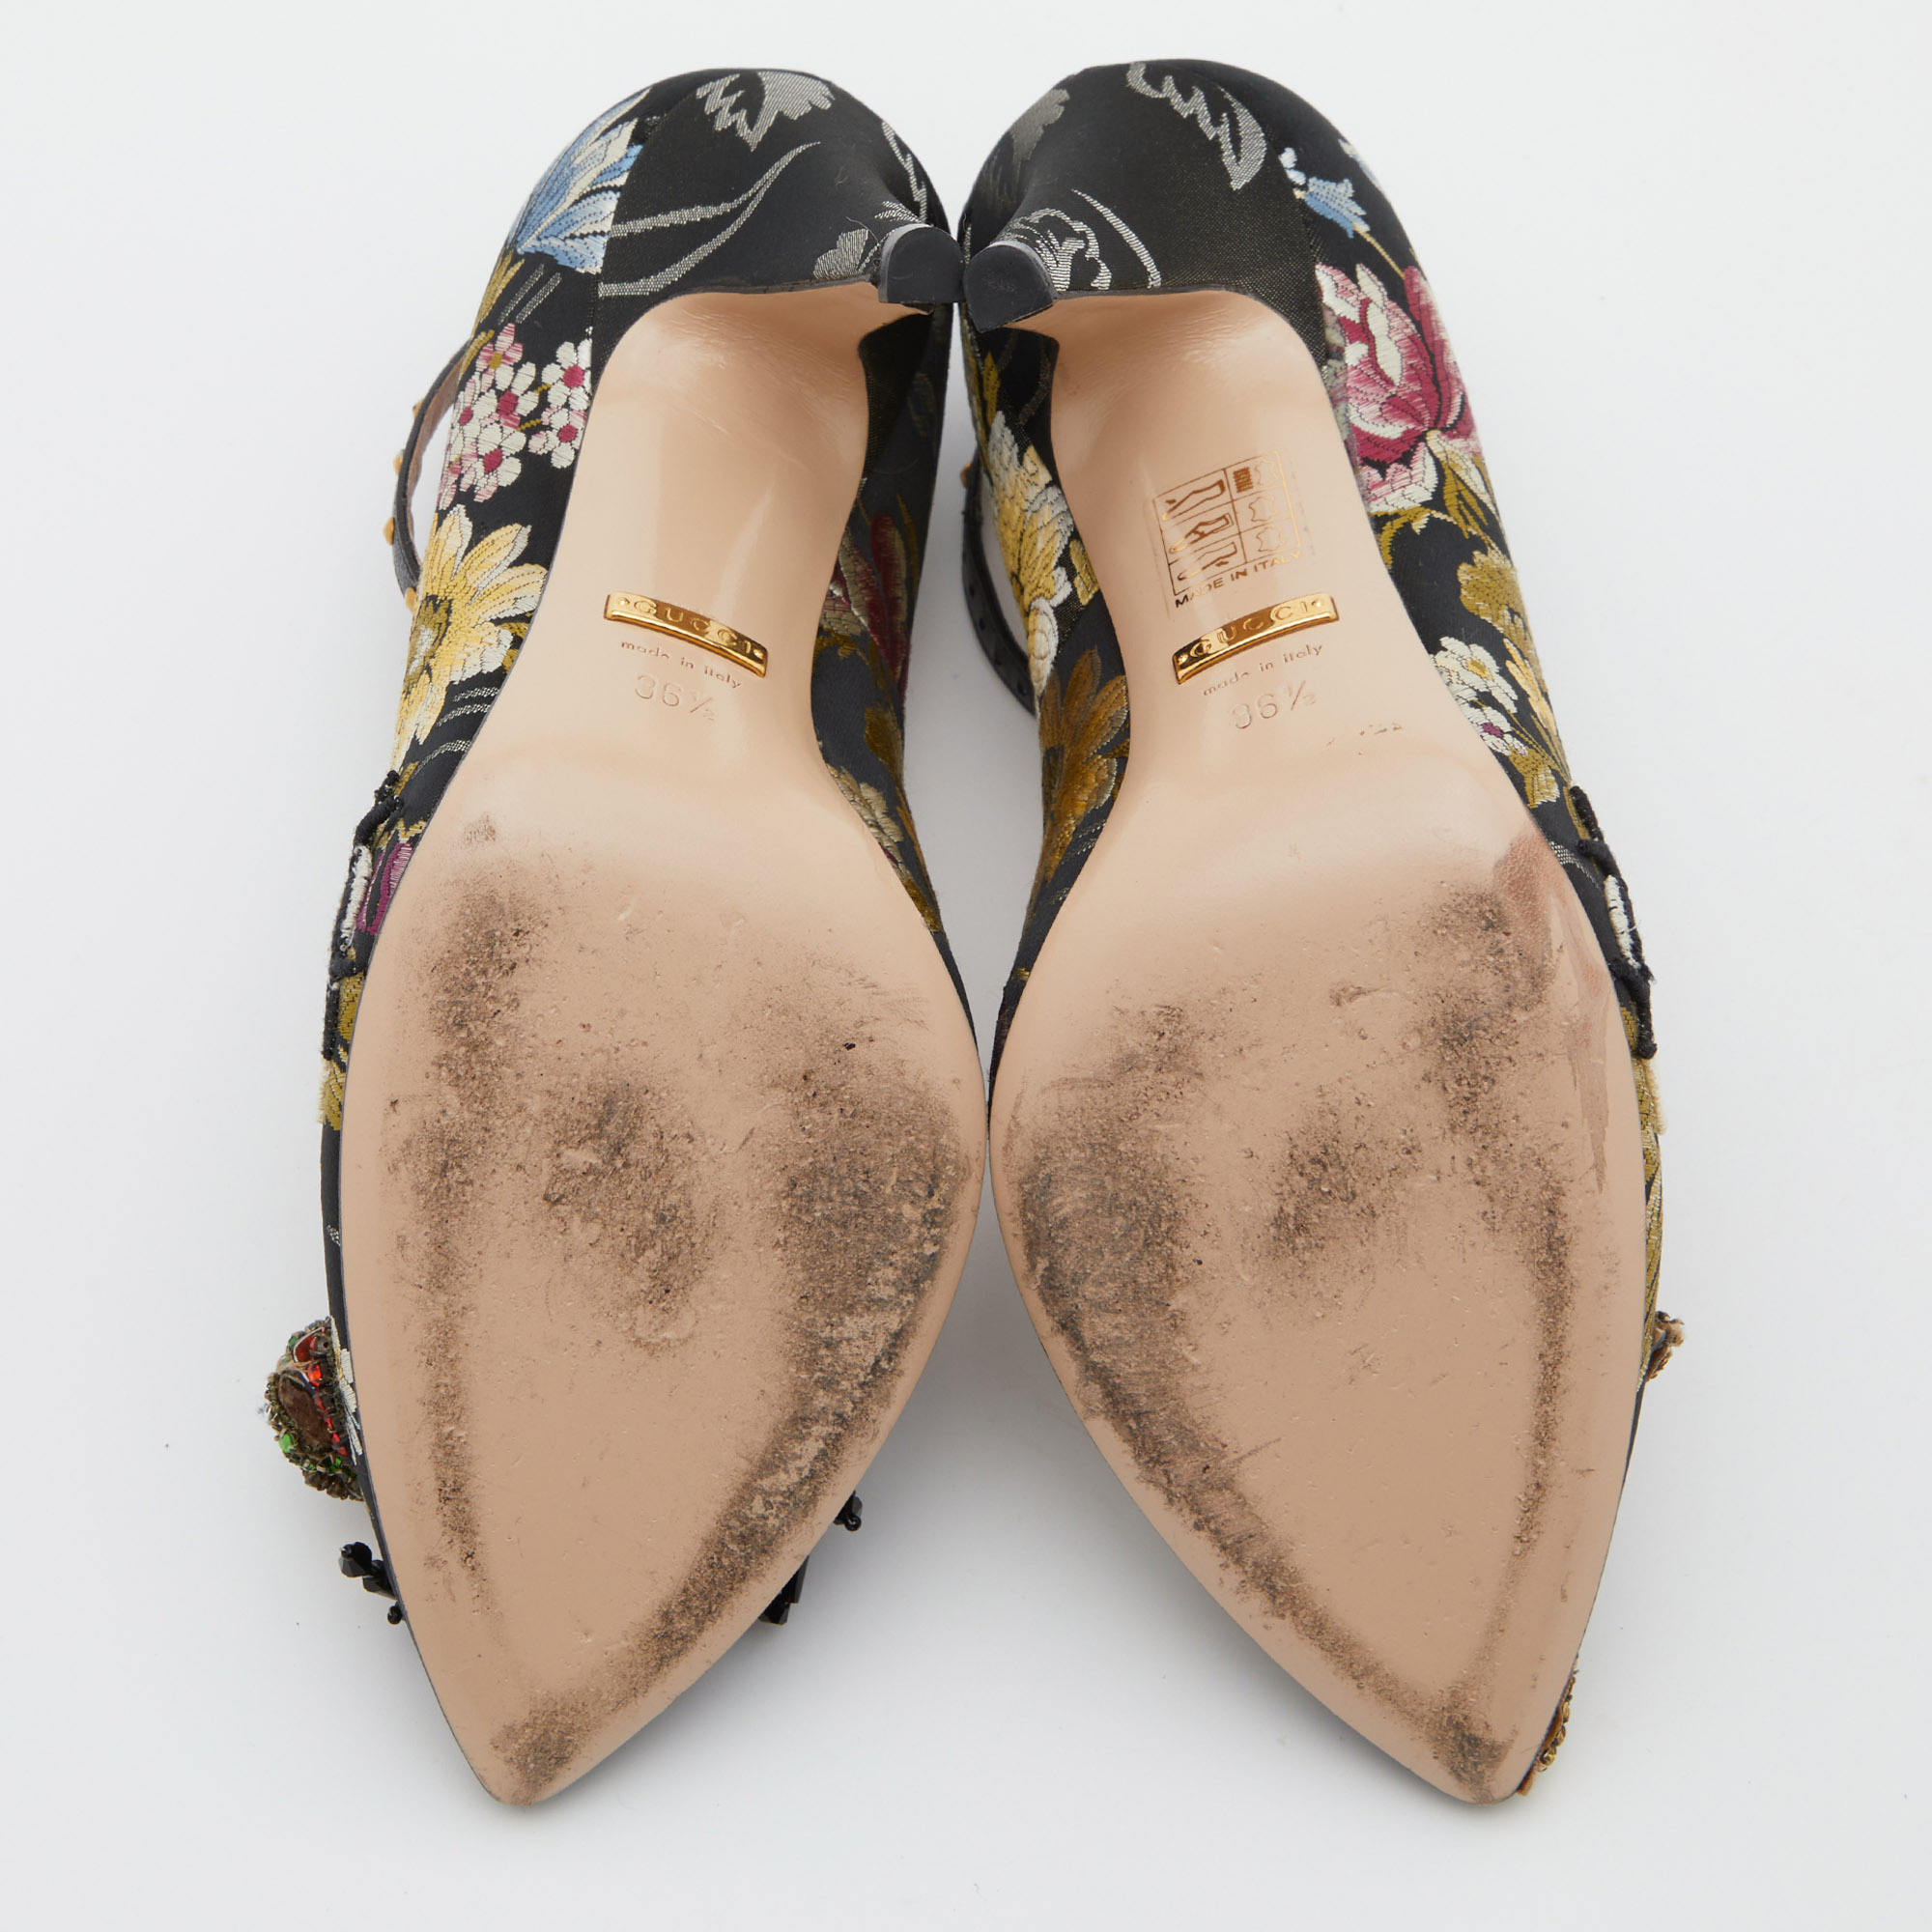 Gucci Multicolor Jacquard Floral Dionysus Ankle Strap Pumps Size 36.5